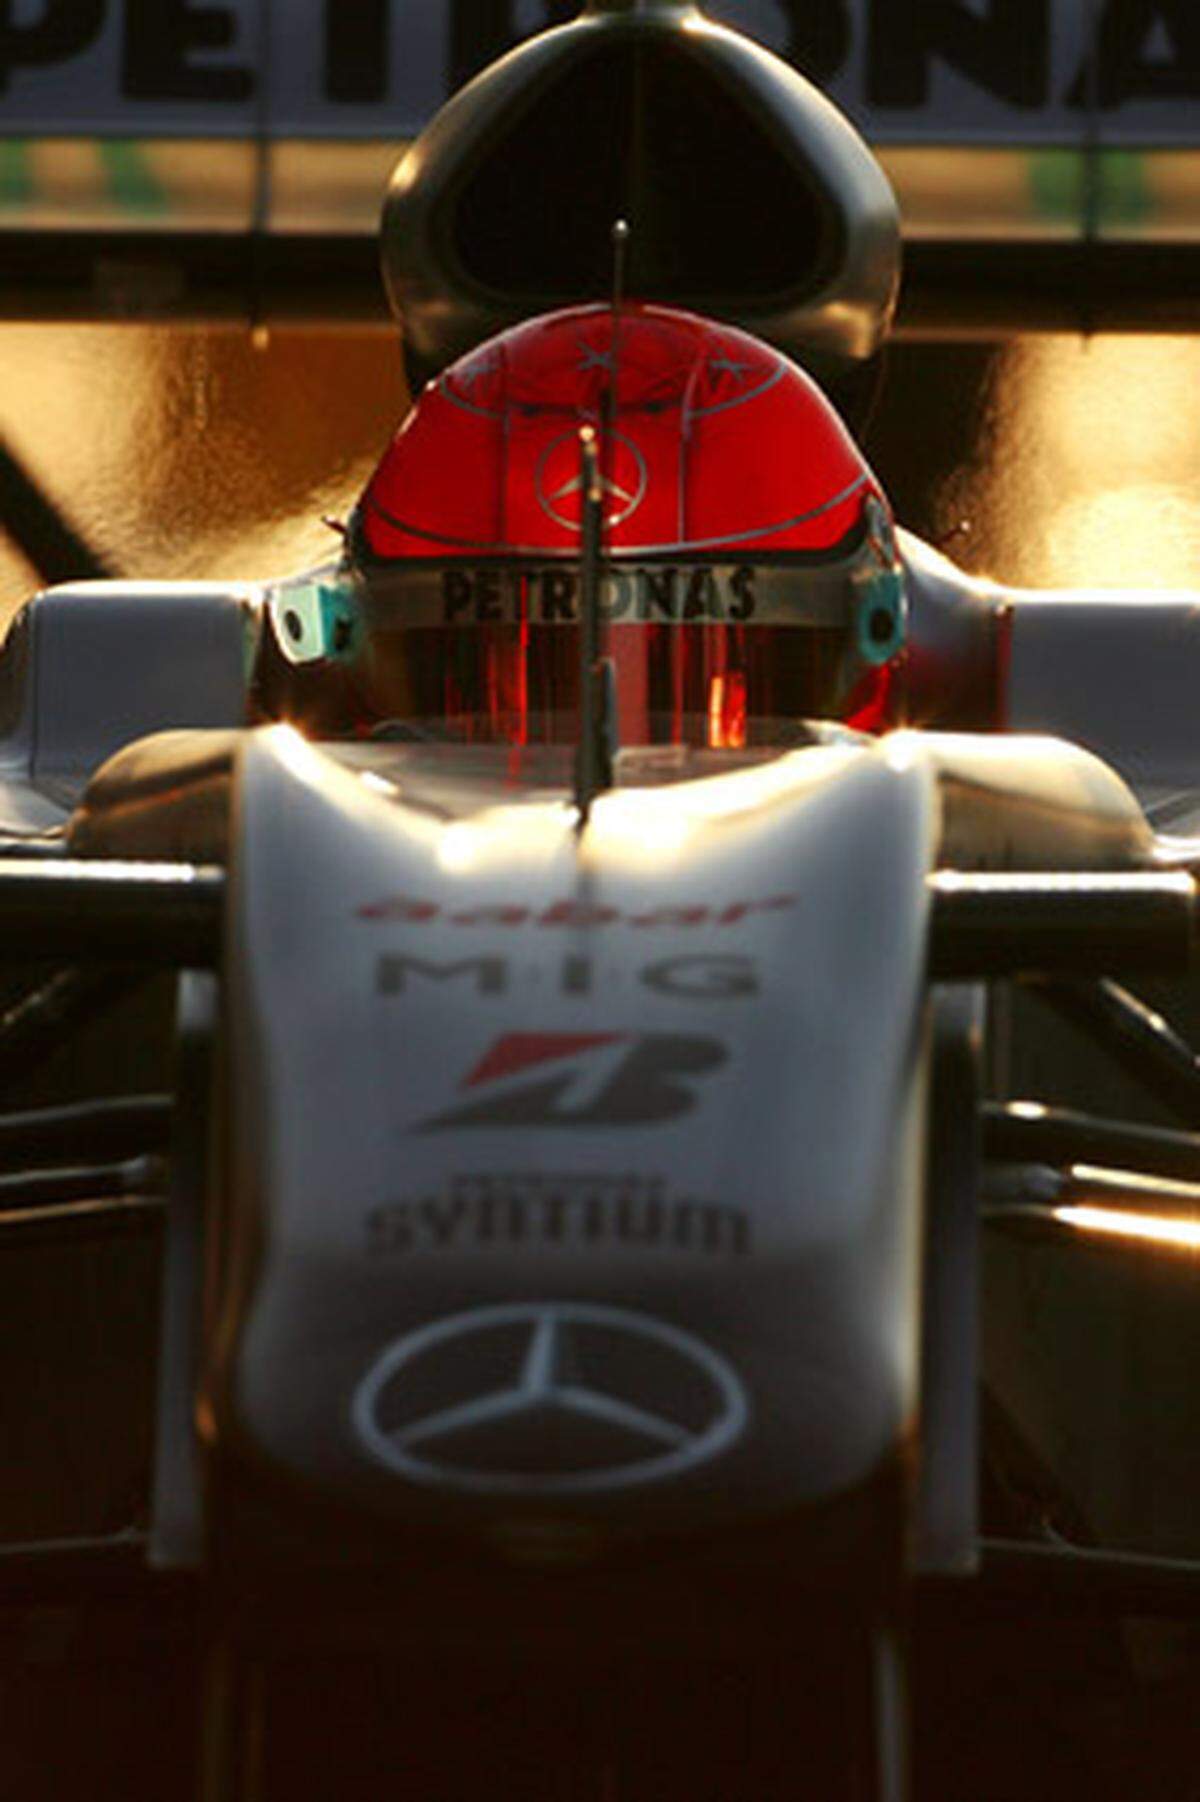 "Ich bin keine Legende. Ich bin einfach einer, der etwas gut kann, was er genießt." So hatte Michael Schumacher sich und seine sportlichen Triumphe einst beschrieben. Ende 2012 stieg er endgültig aus dem Cockpit. 